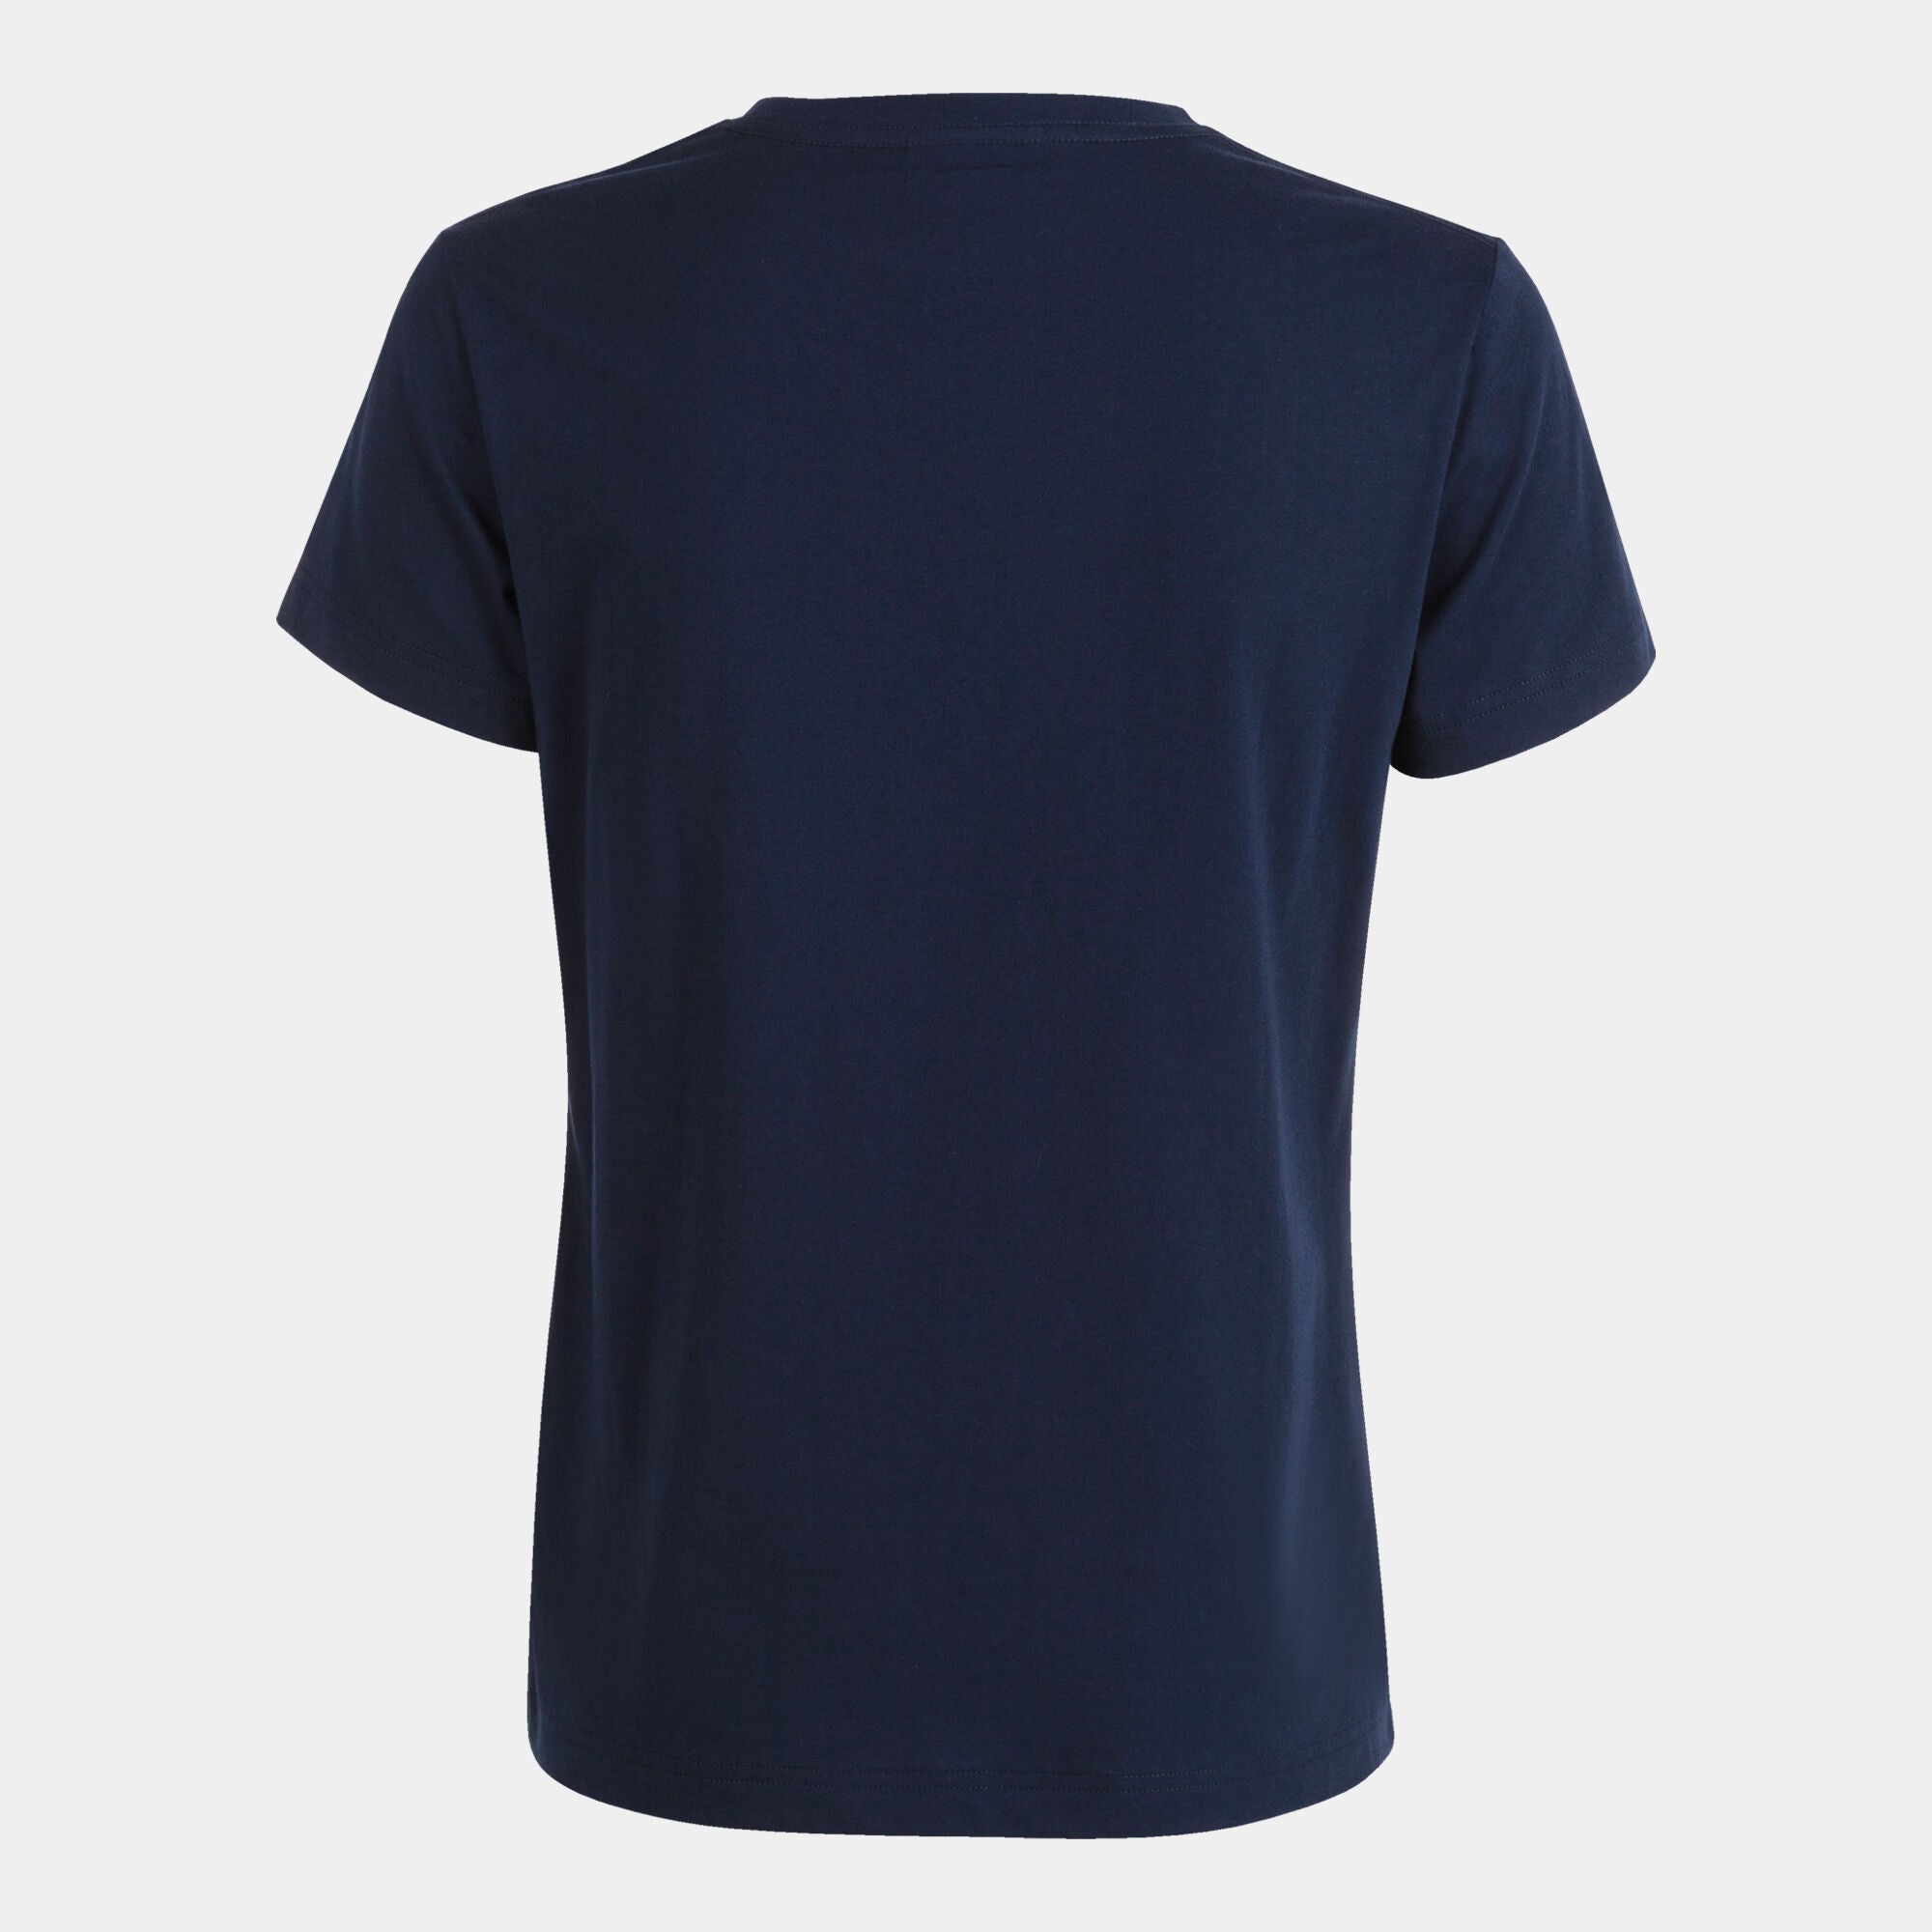 Joma Desert Round Neck T-shirt Women-2376-Navy